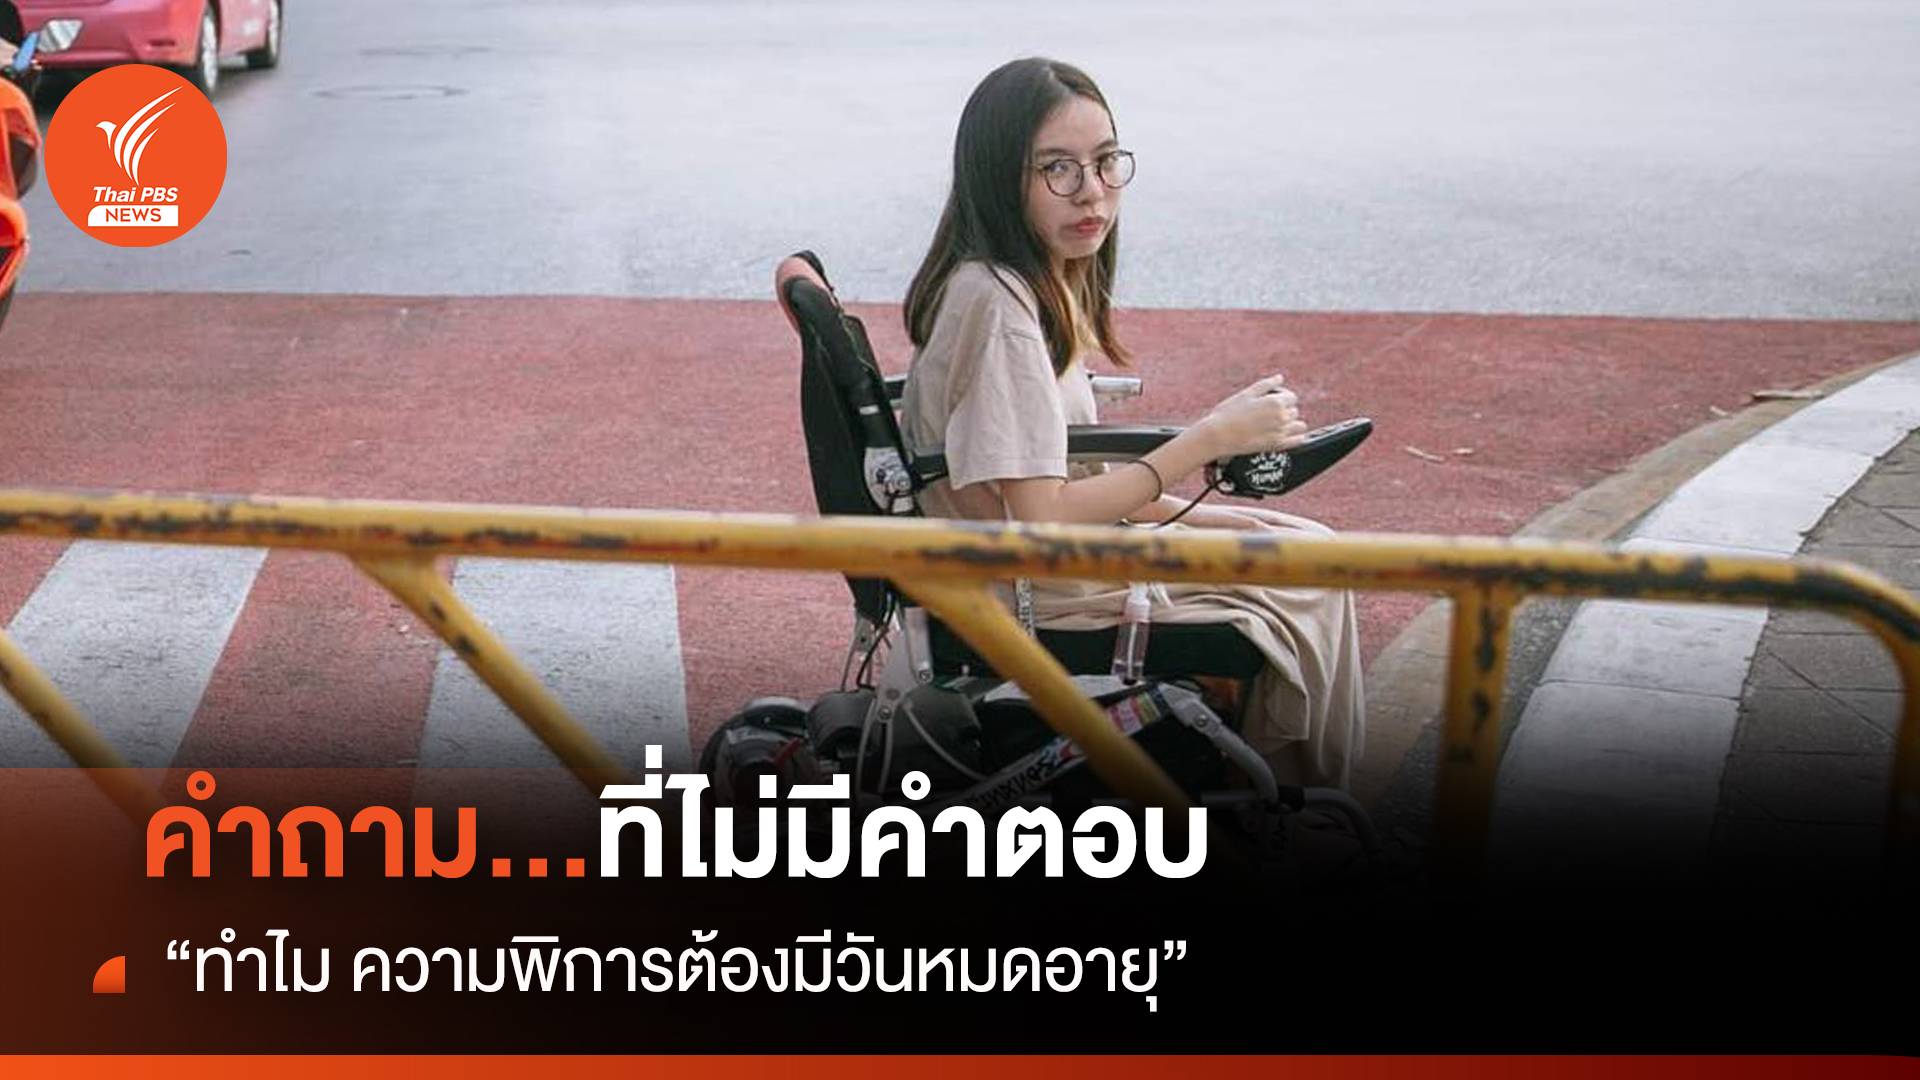 “ทำไม ความพิการในประเทศไทยถึงต้องมีวันหมดอายุ” 